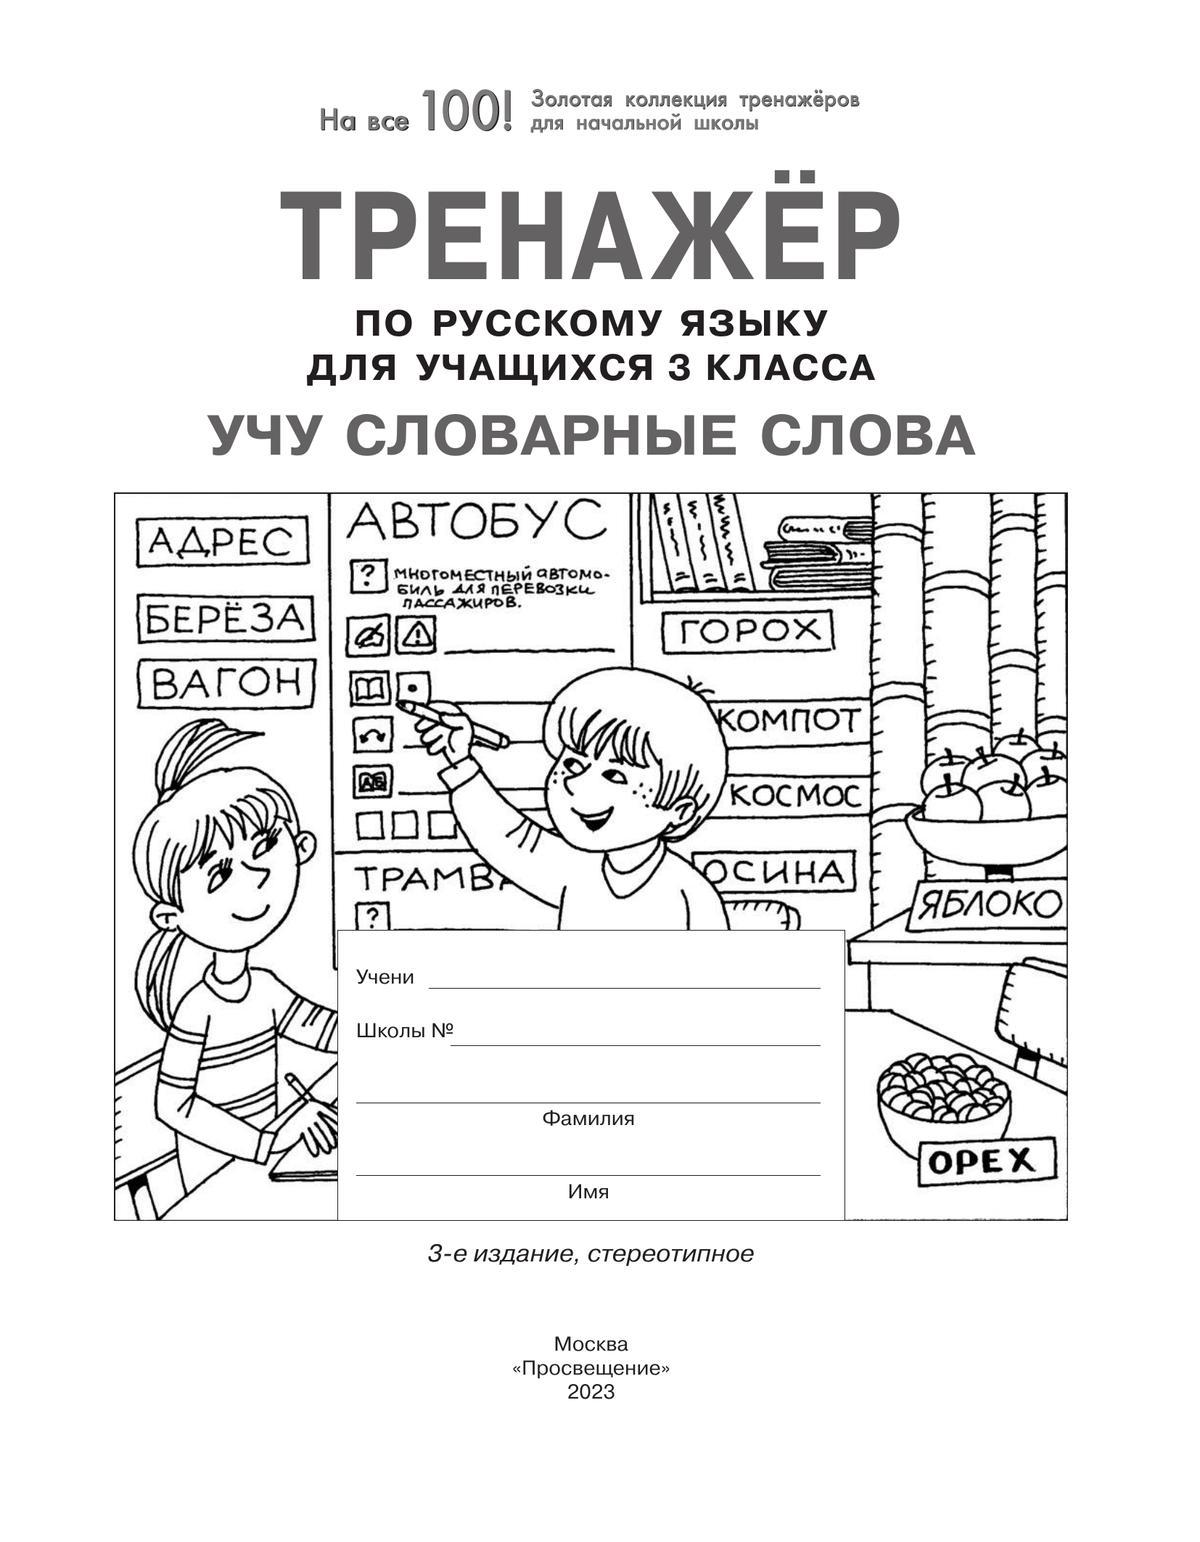 Тренажер по русскому языку для учащихся 3 класса. Учу словарные слова 7